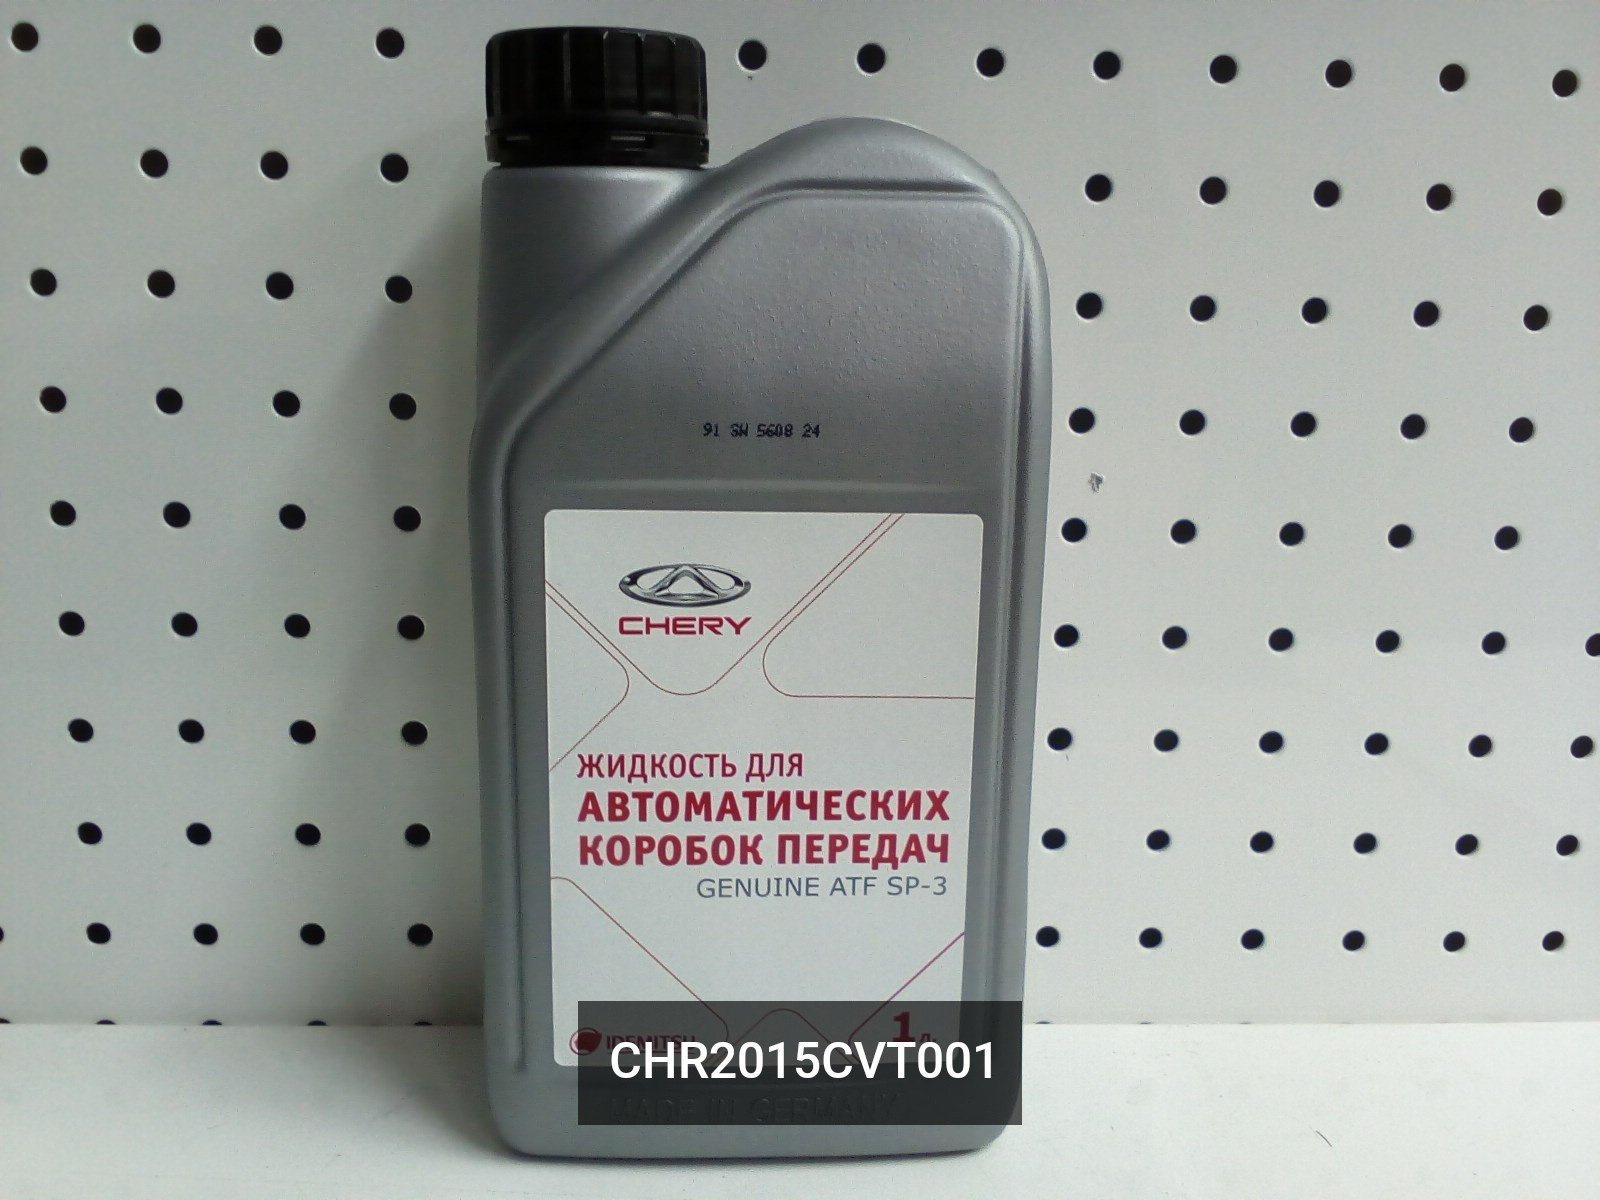 Чери масло трансмиссионное. Chery Genuine ATF sp3. Масло SP-cvt1 трансмиссионное Hyundai. Масло Chery ATF sp3. Chery Genuine CVT ATF sp3.